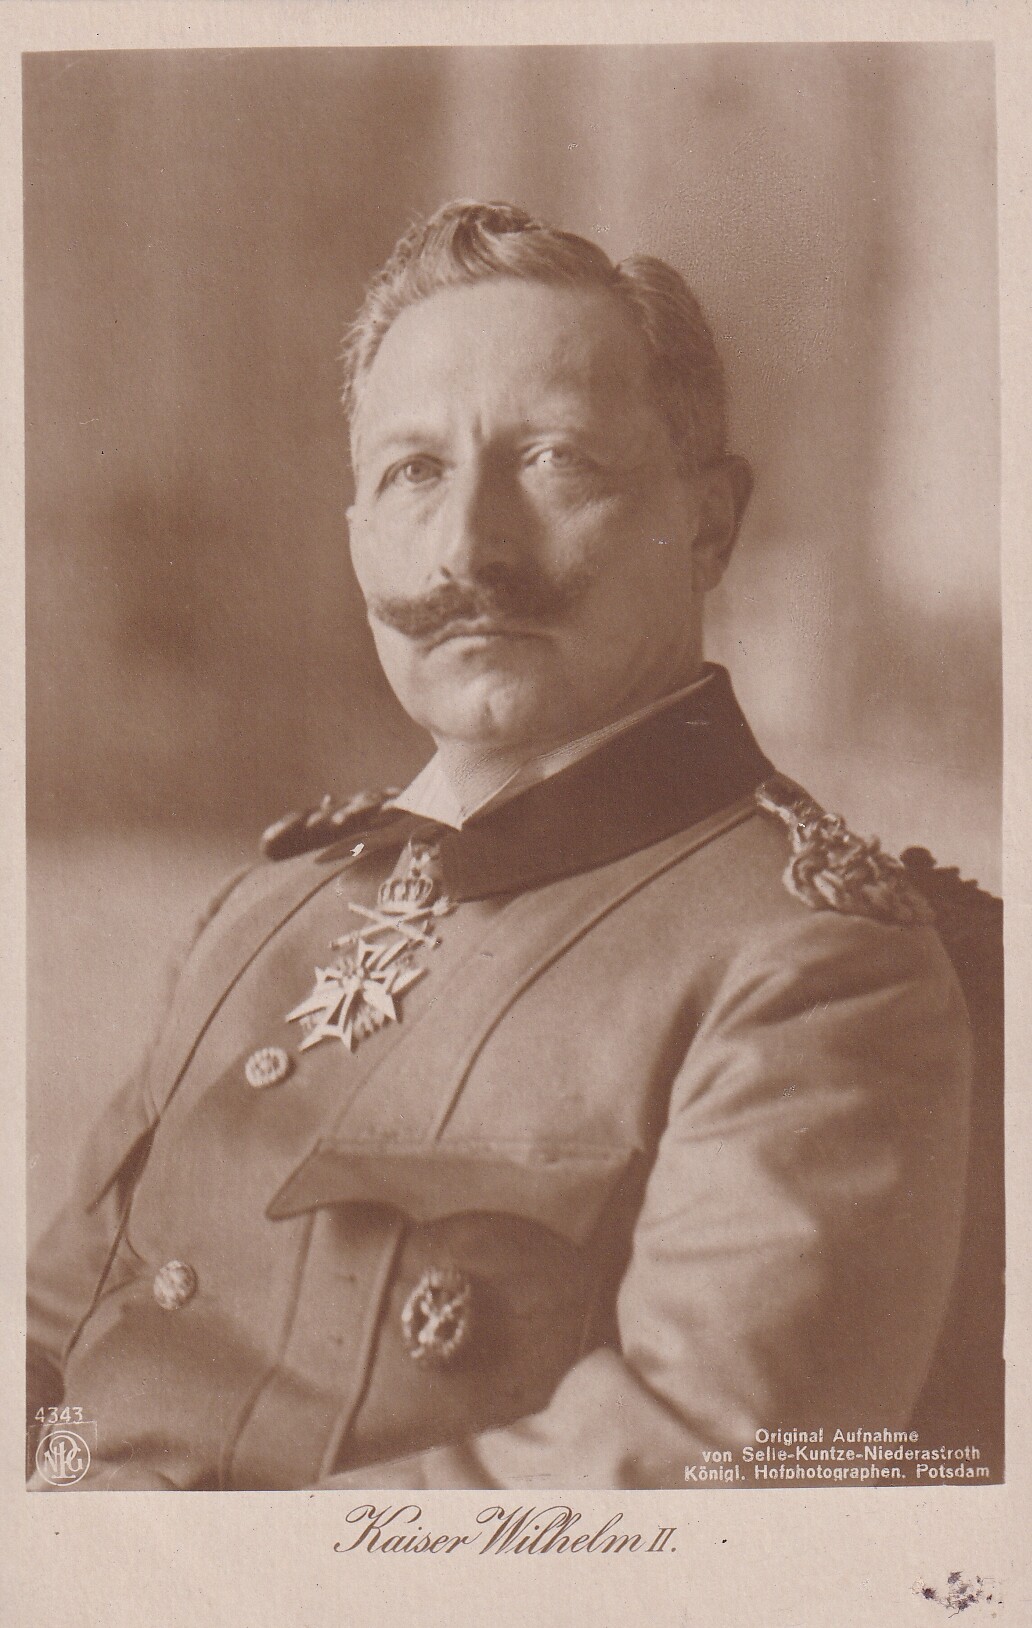 Bildpostkarte mit Foto des letzten deutschen Kaisers Wilhelm II. (1859-1941) in Uniform, 1910. (Schloß Wernigerode GmbH RR-F)